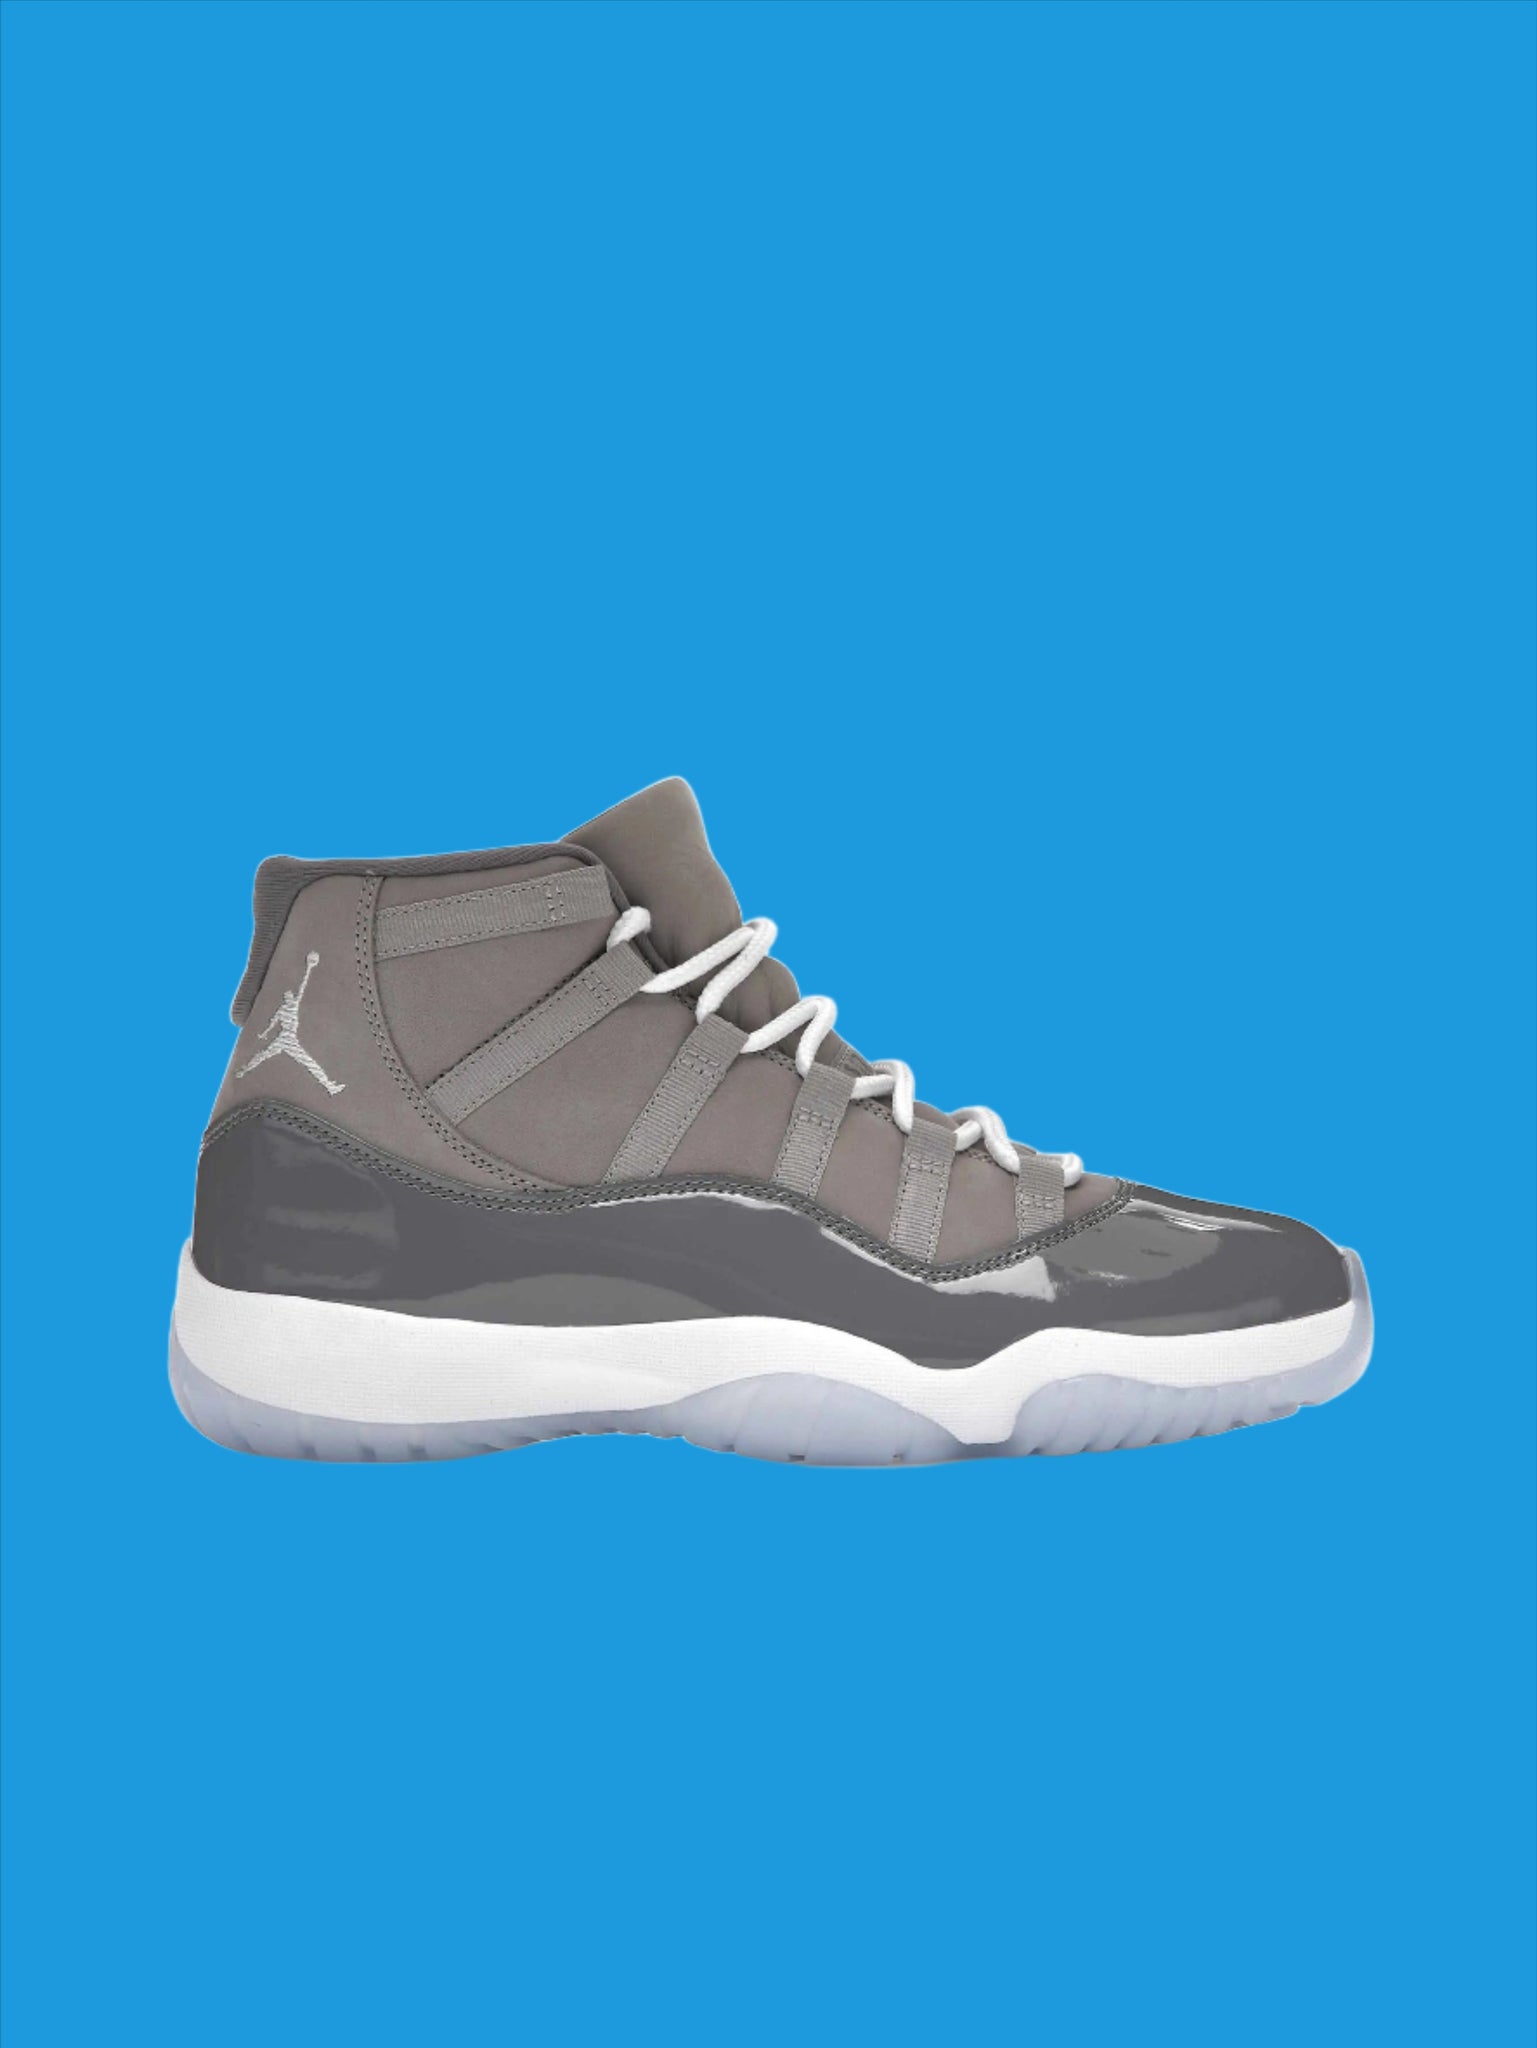 Nike Air Jordan 11 Retro Cool Grey (2021) Prior